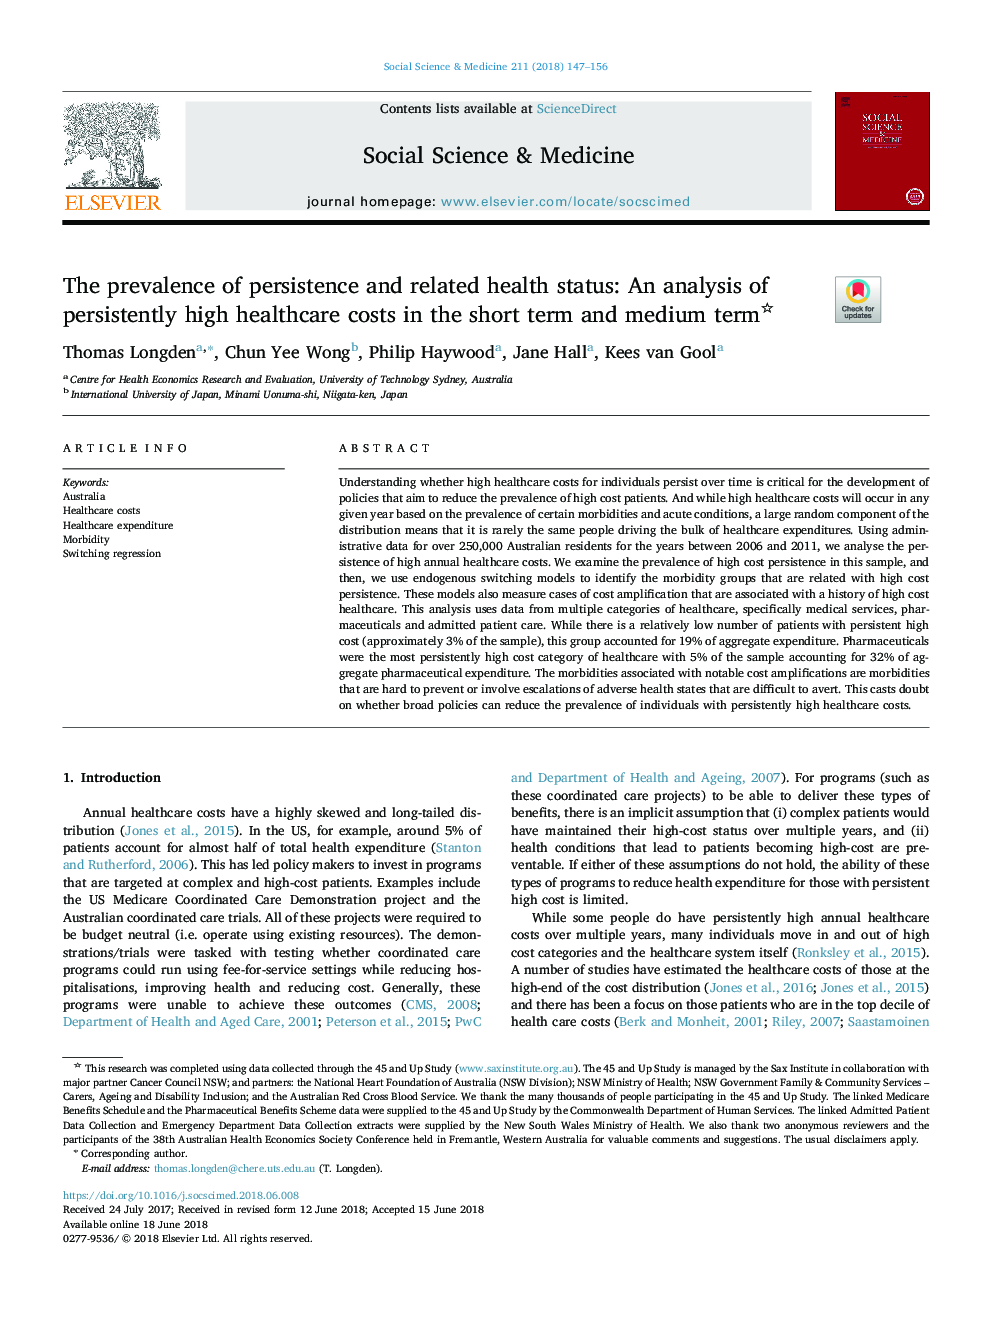 شیوع پایداری و وضعیت سلامت مرتبط: تجزیه و تحلیل هزینه های مراقبت های بهداشتی پایدار در کوتاه مدت و میان مدت 